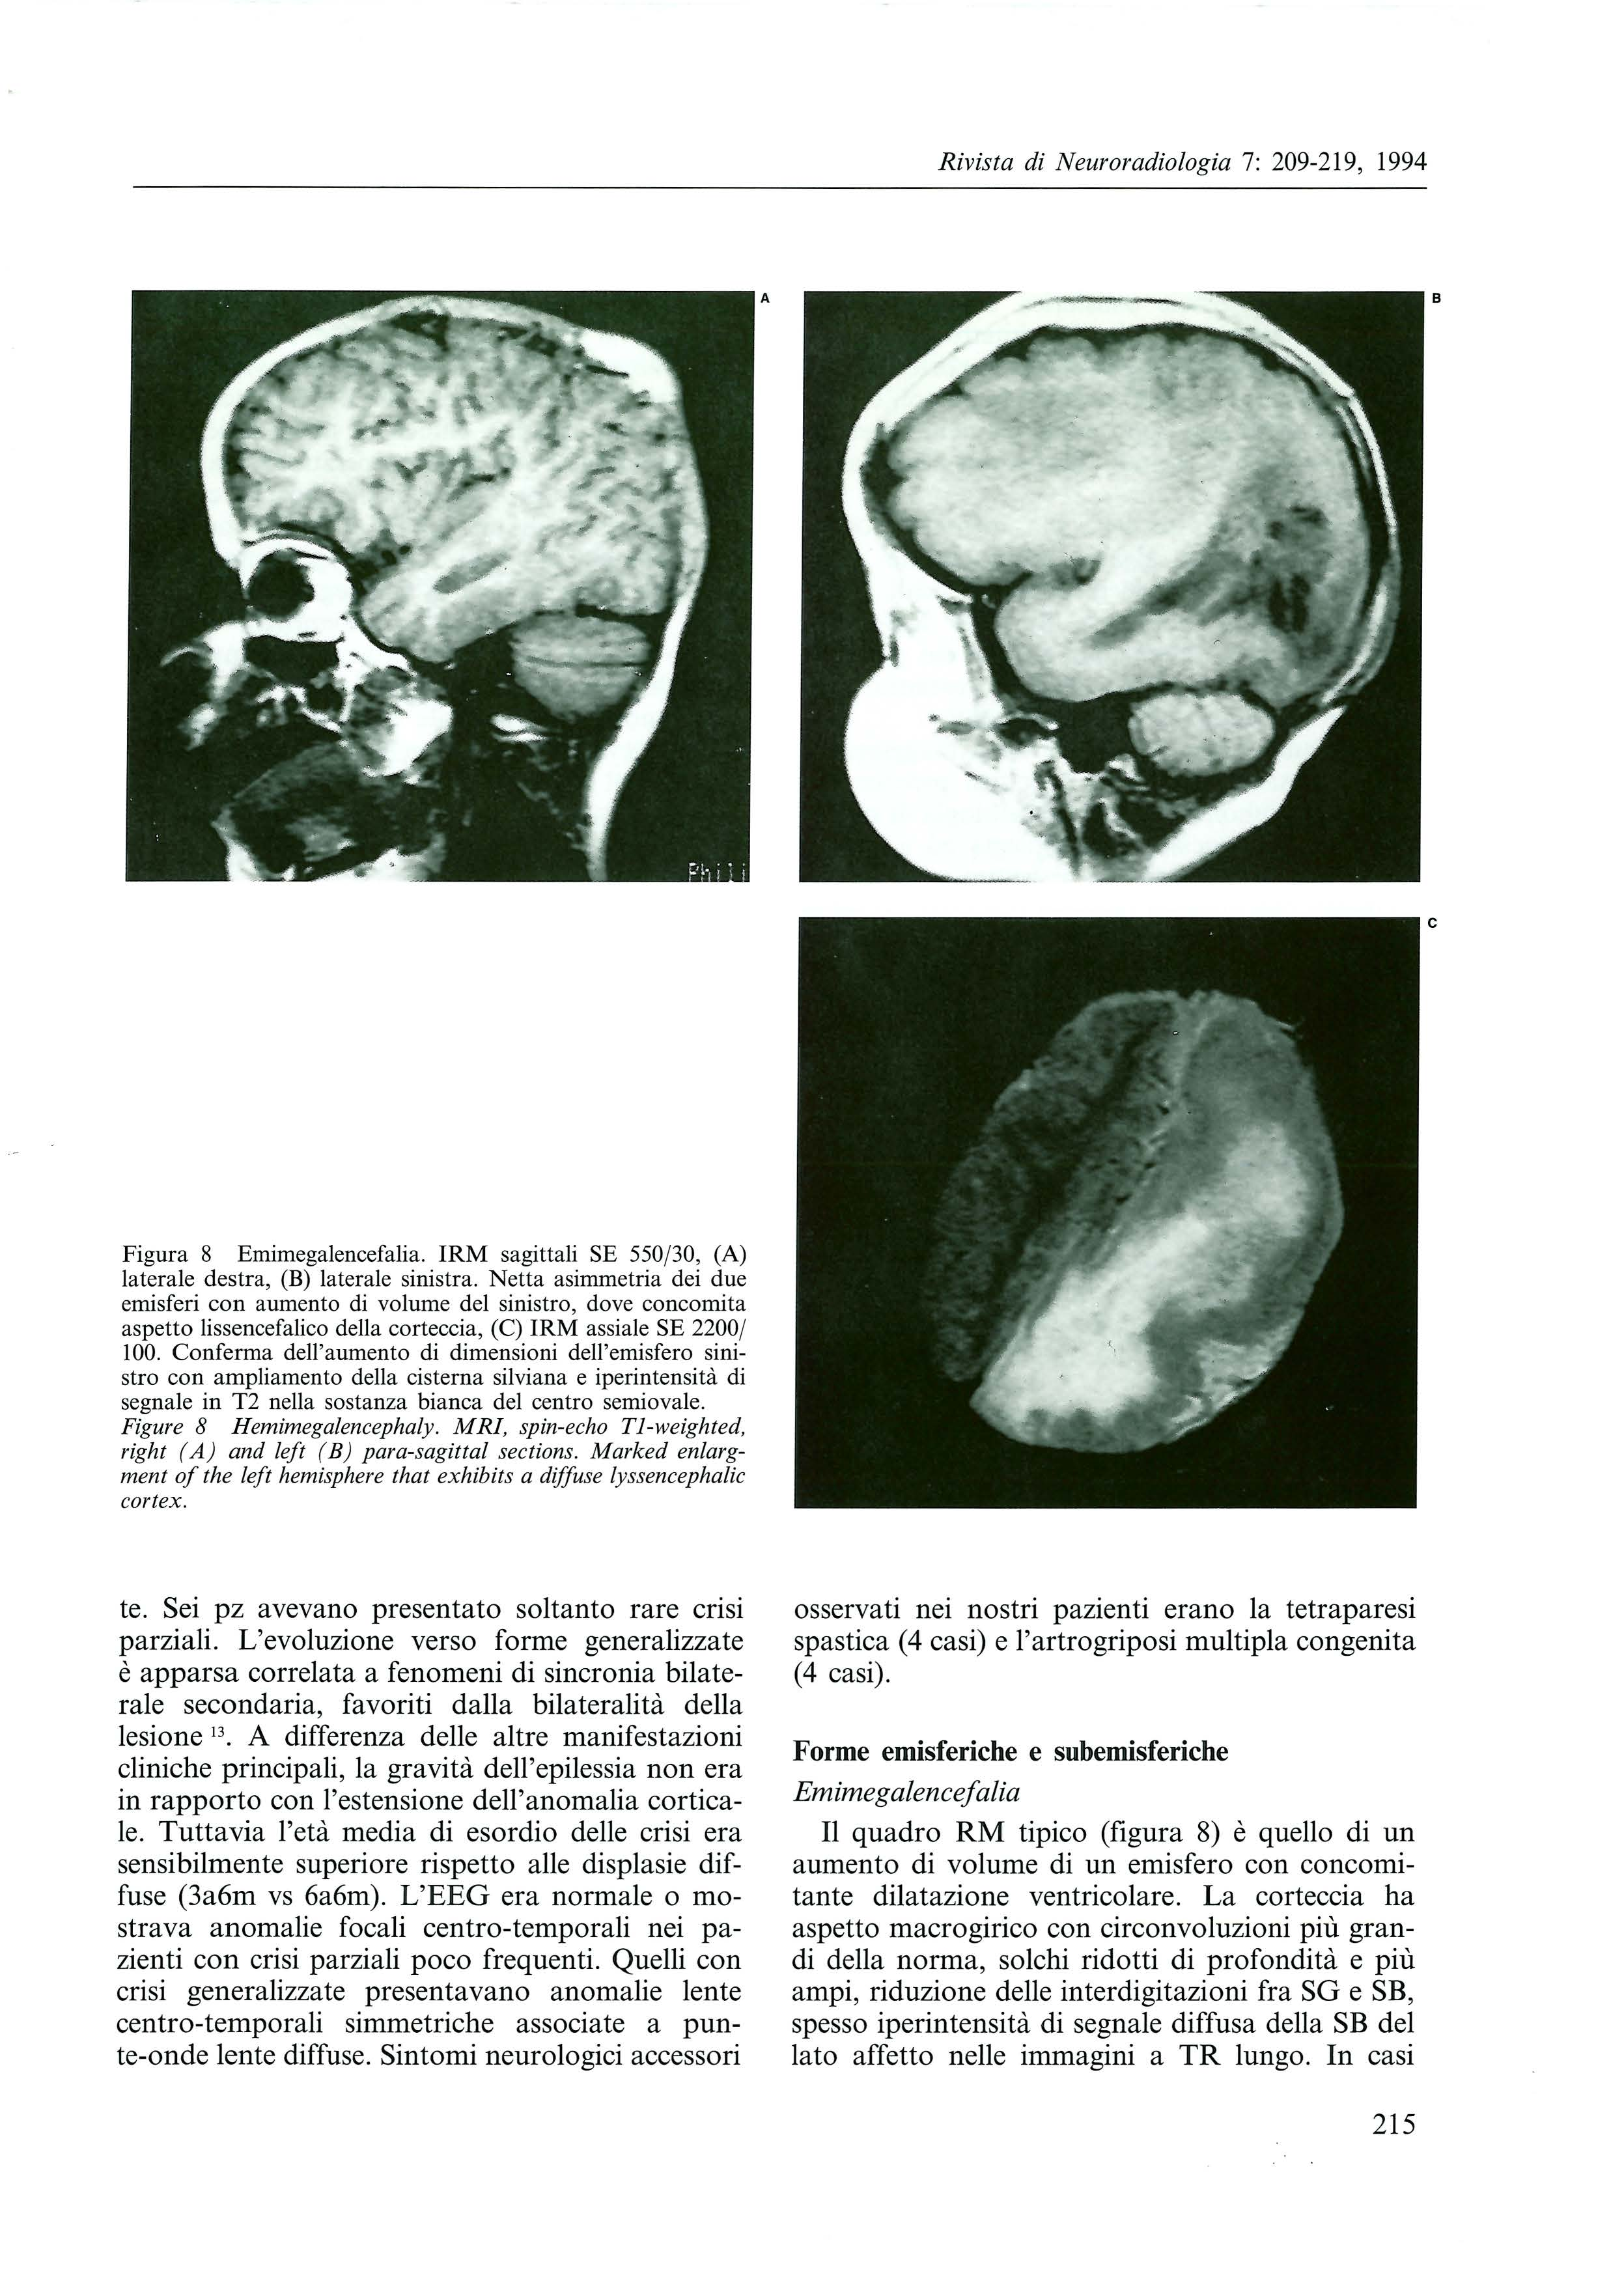 A B c Figura 8 Emimegalencefalia. IRM sagittali SE 550/30, (A) laterale destra, (B) laterale sinistra.